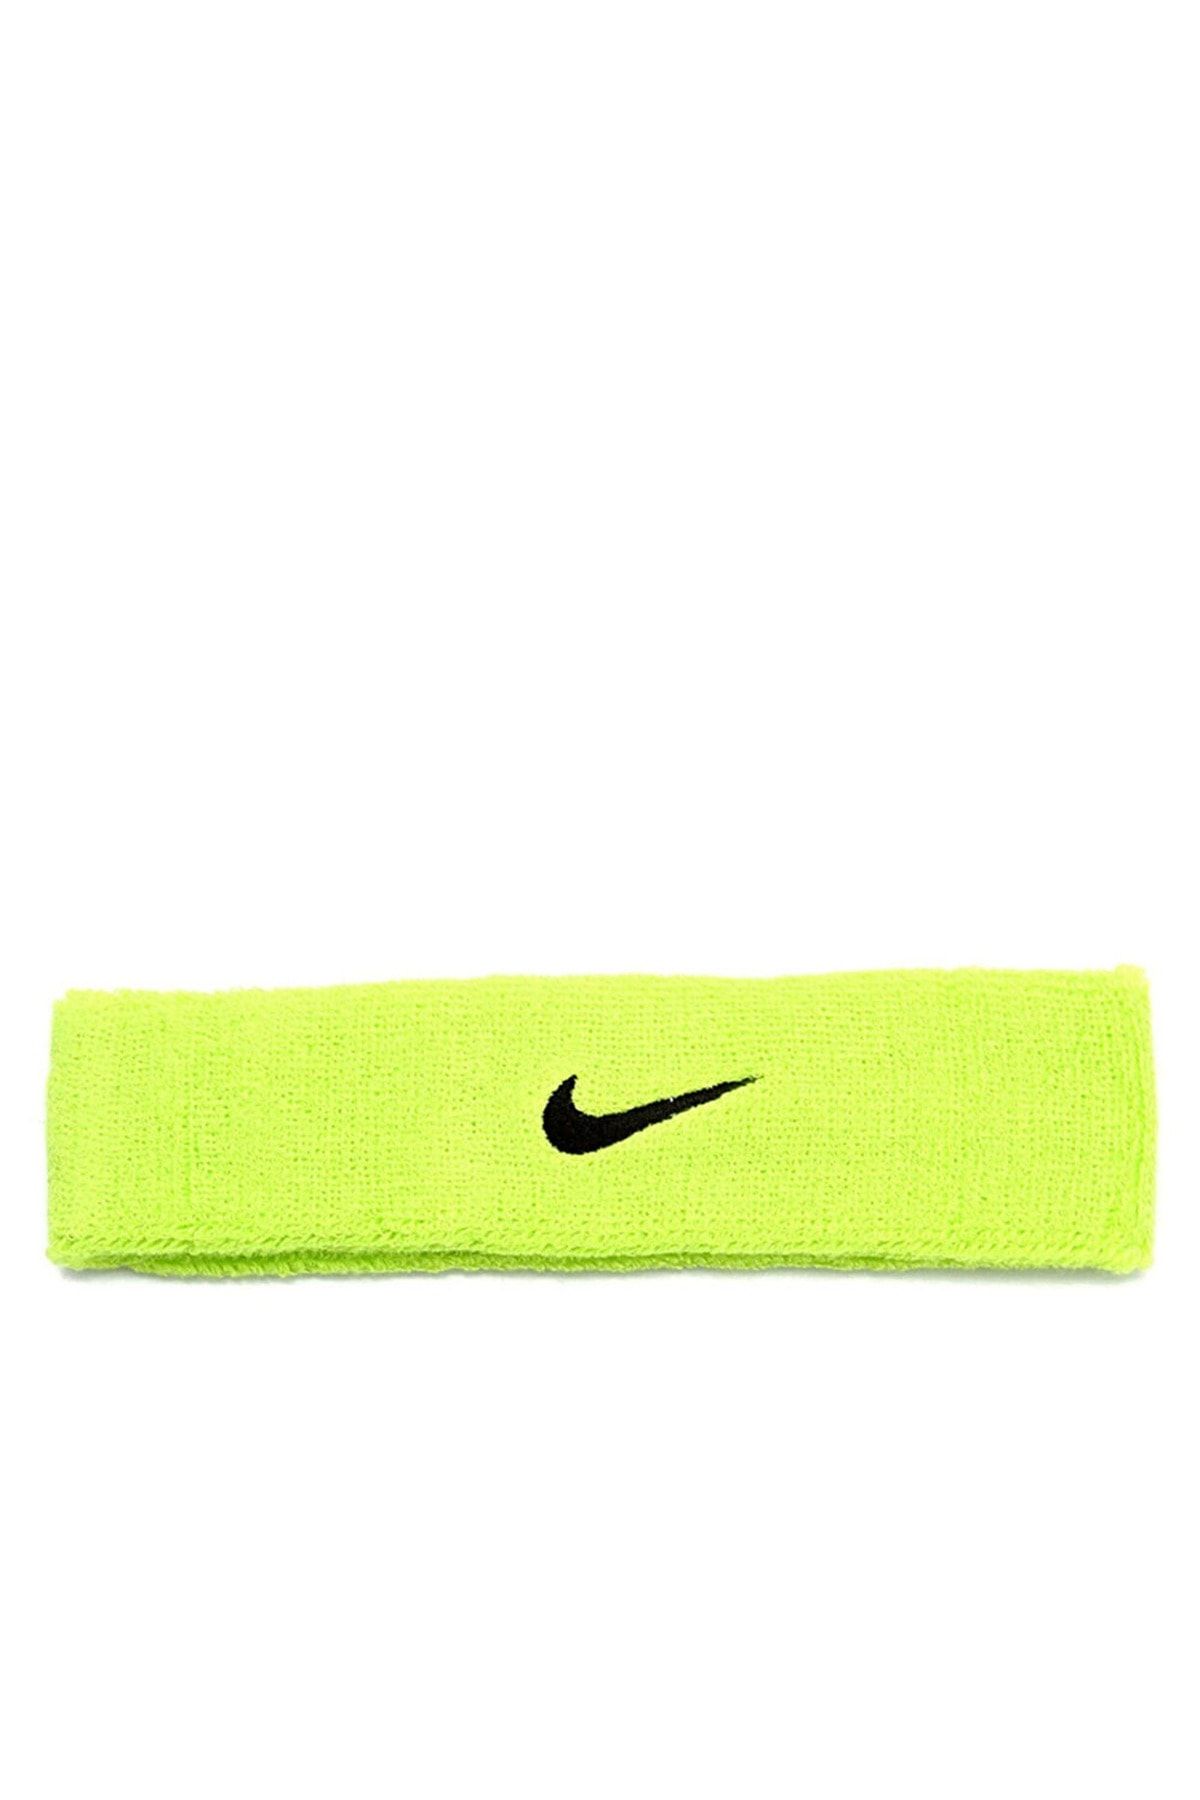 Nike Swoosh Neon Yeşil Tenis Havlu Saç Bandı